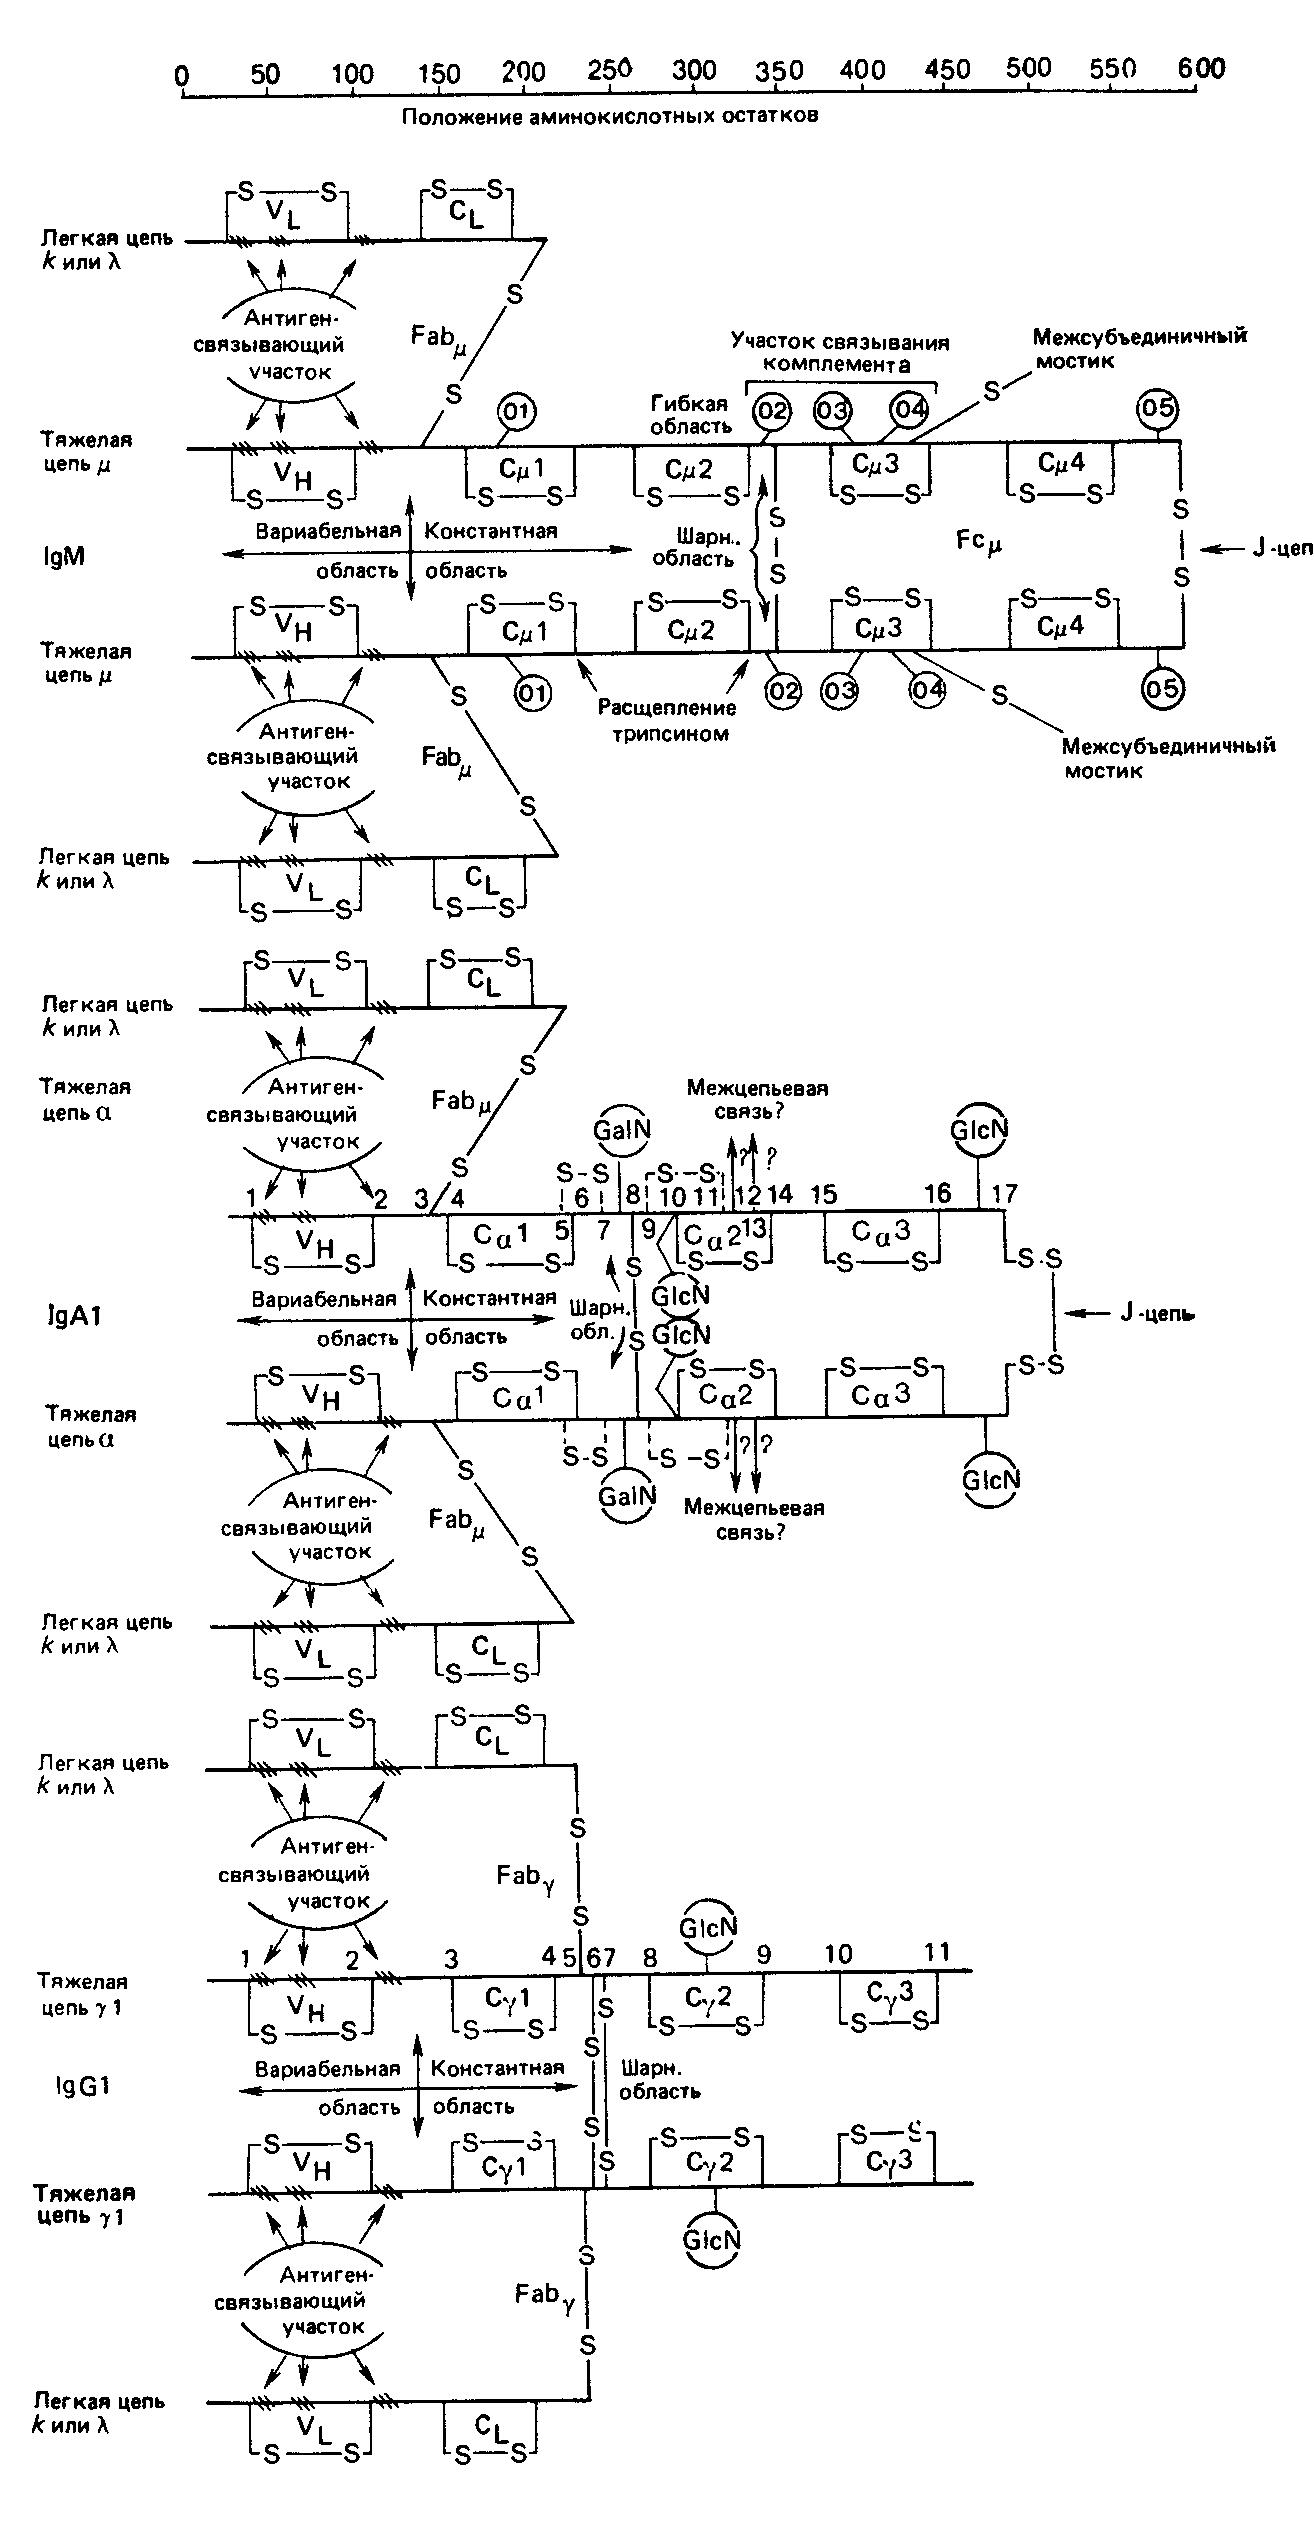 Схематическое изображение пяти классов иммуноглобулинов человека.